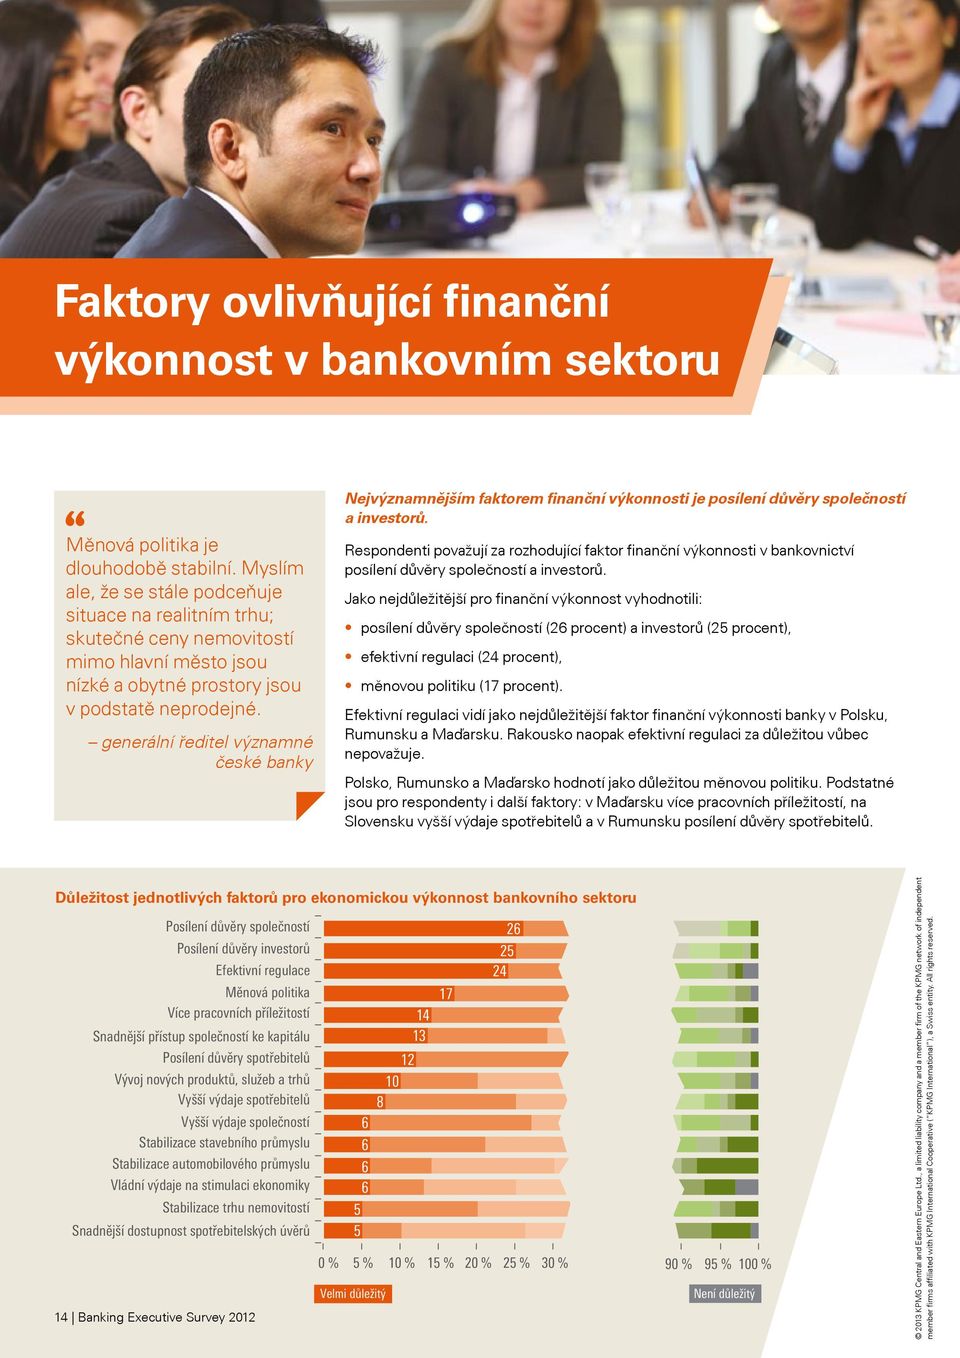 generální ředitel významné české banky Nejvýznamnějším faktorem finanční výkonnosti je posílení důvěry společností a investorů.